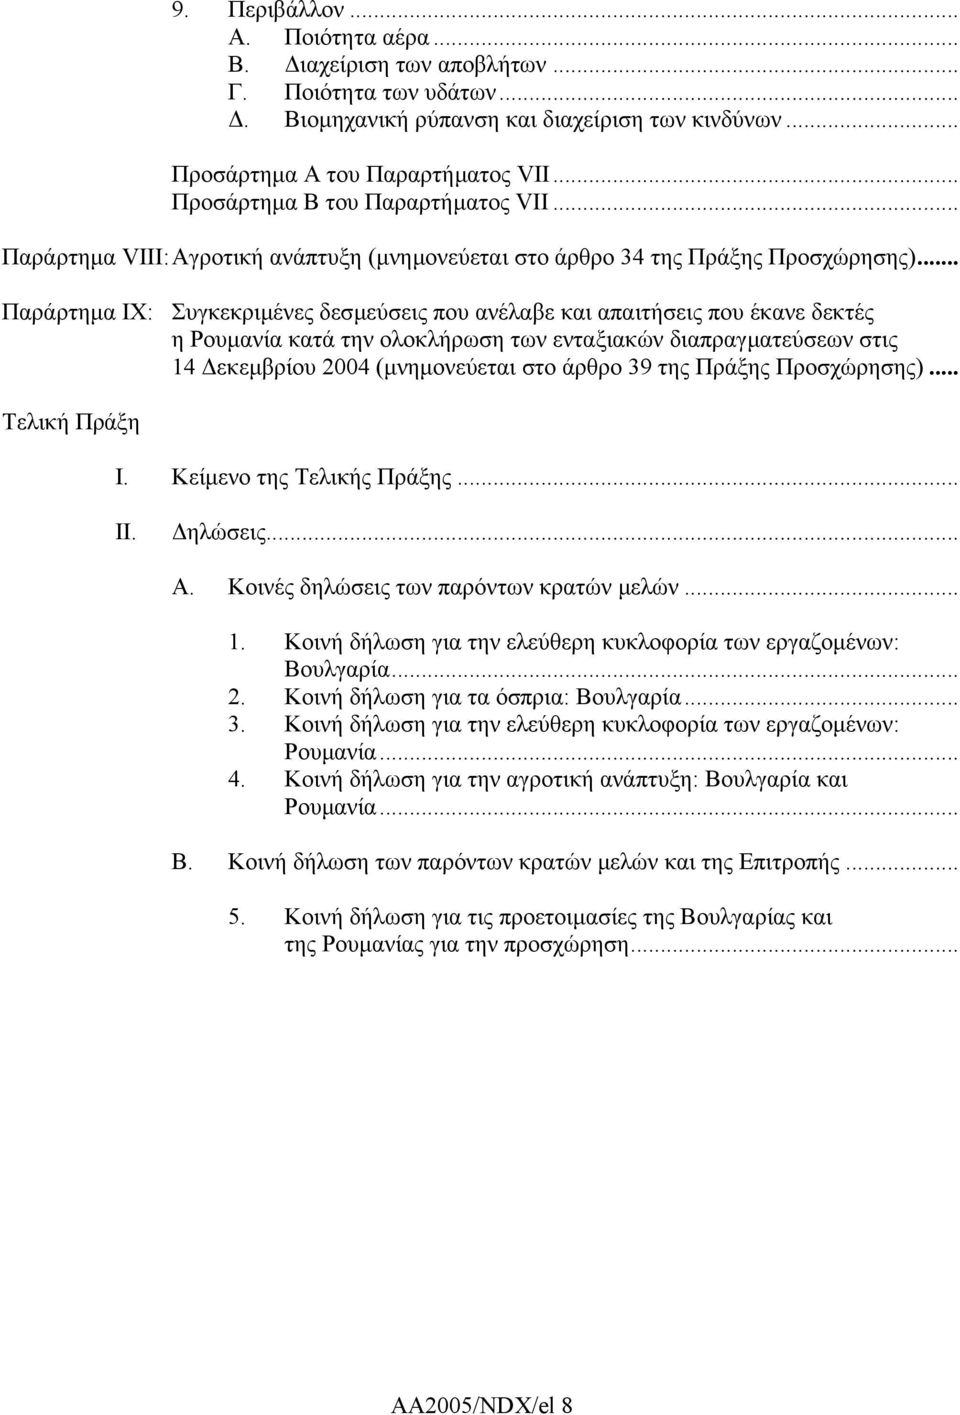 .. Παράρτηµα ΙΧ: Συγκεκριµένες δεσµεύσεις που ανέλαβε και απαιτήσεις που έκανε δεκτές η Ρουµανία κατά την ολοκλήρωση των ενταξιακών διαπραγµατεύσεων στις 14 εκεµβρίου 2004 (µνηµονεύεται στο άρθρο 39